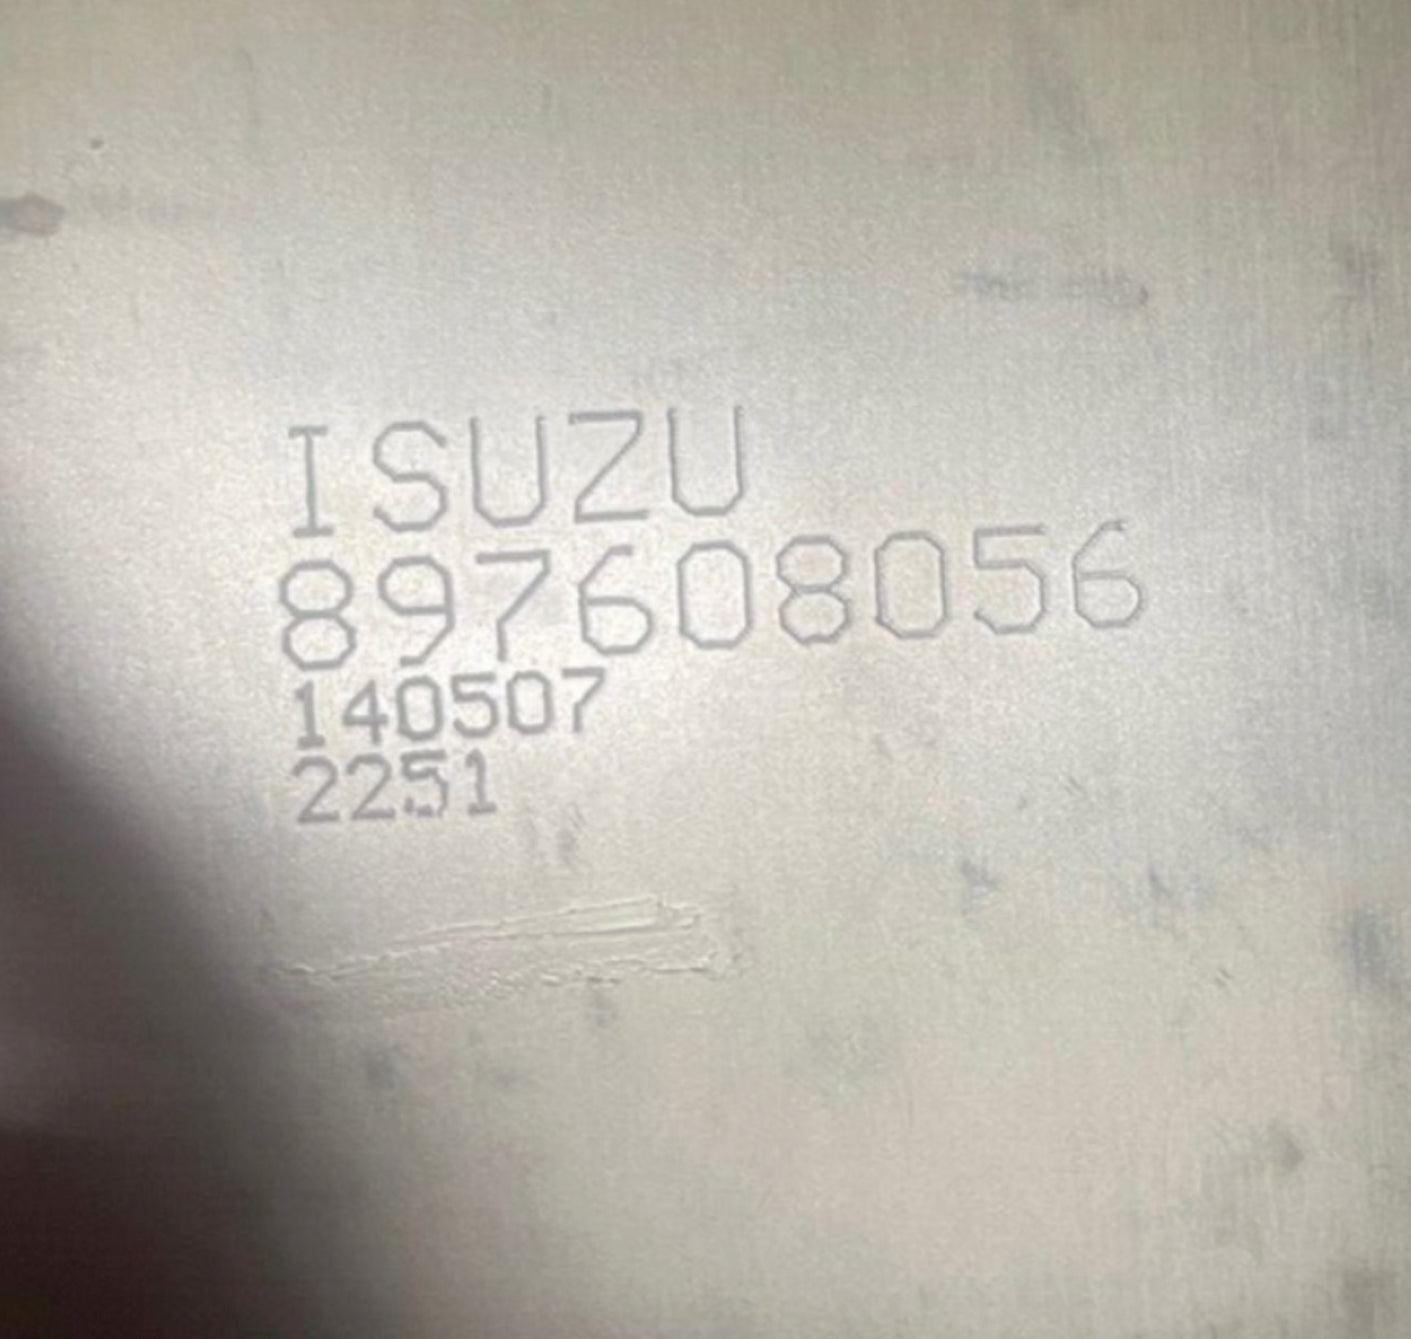 897608056 Genuine Isuzu Dpf Diesel Particulate Filter - ADVANCED TRUCK PARTS